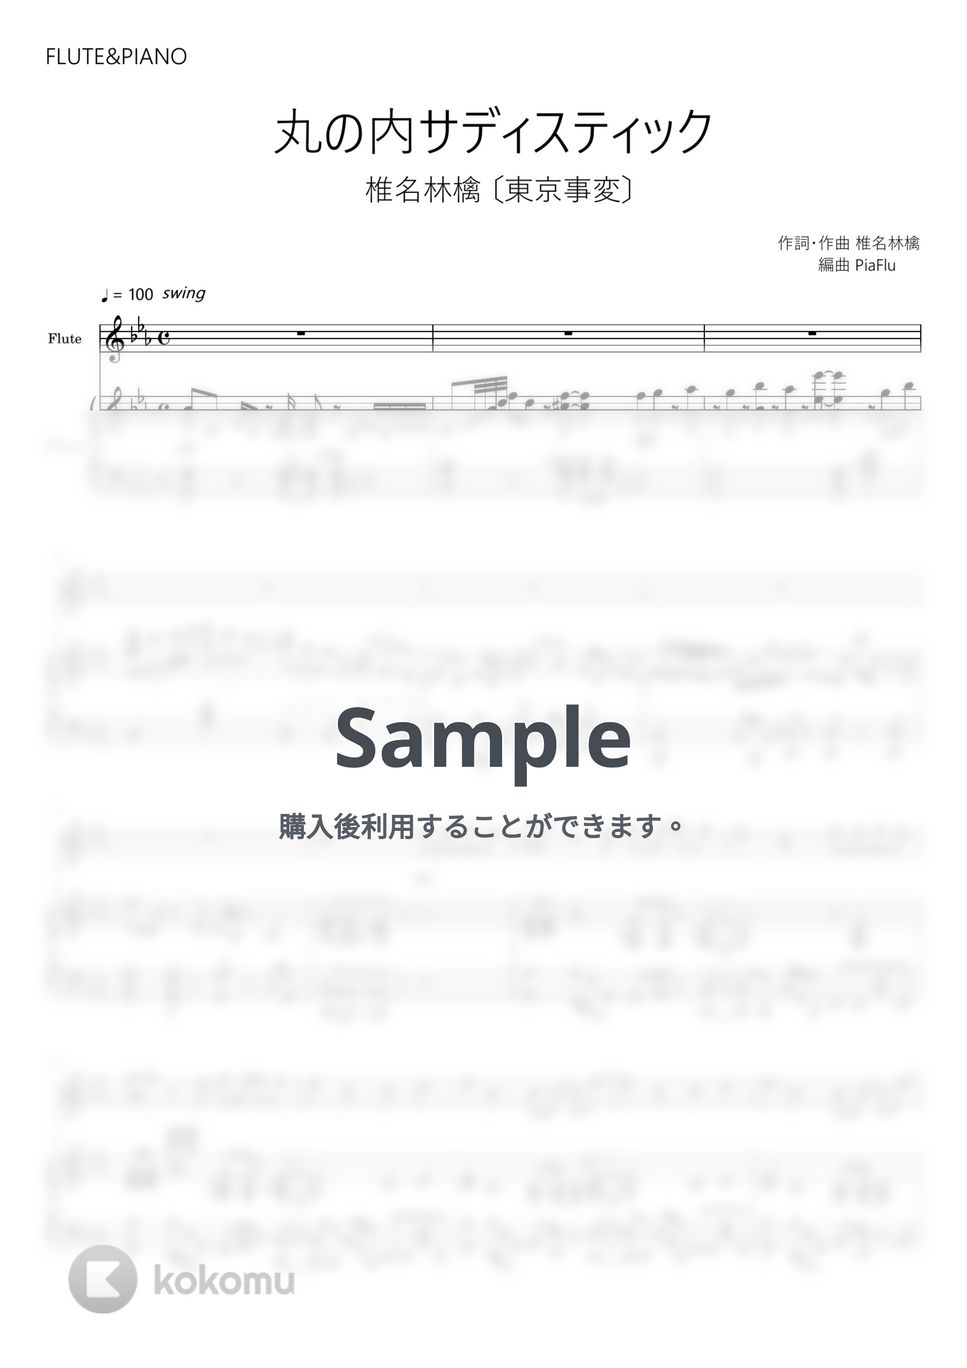 椎名林檎 - 丸の内サディスティック (フルート&ピアノ) by PiaFlu